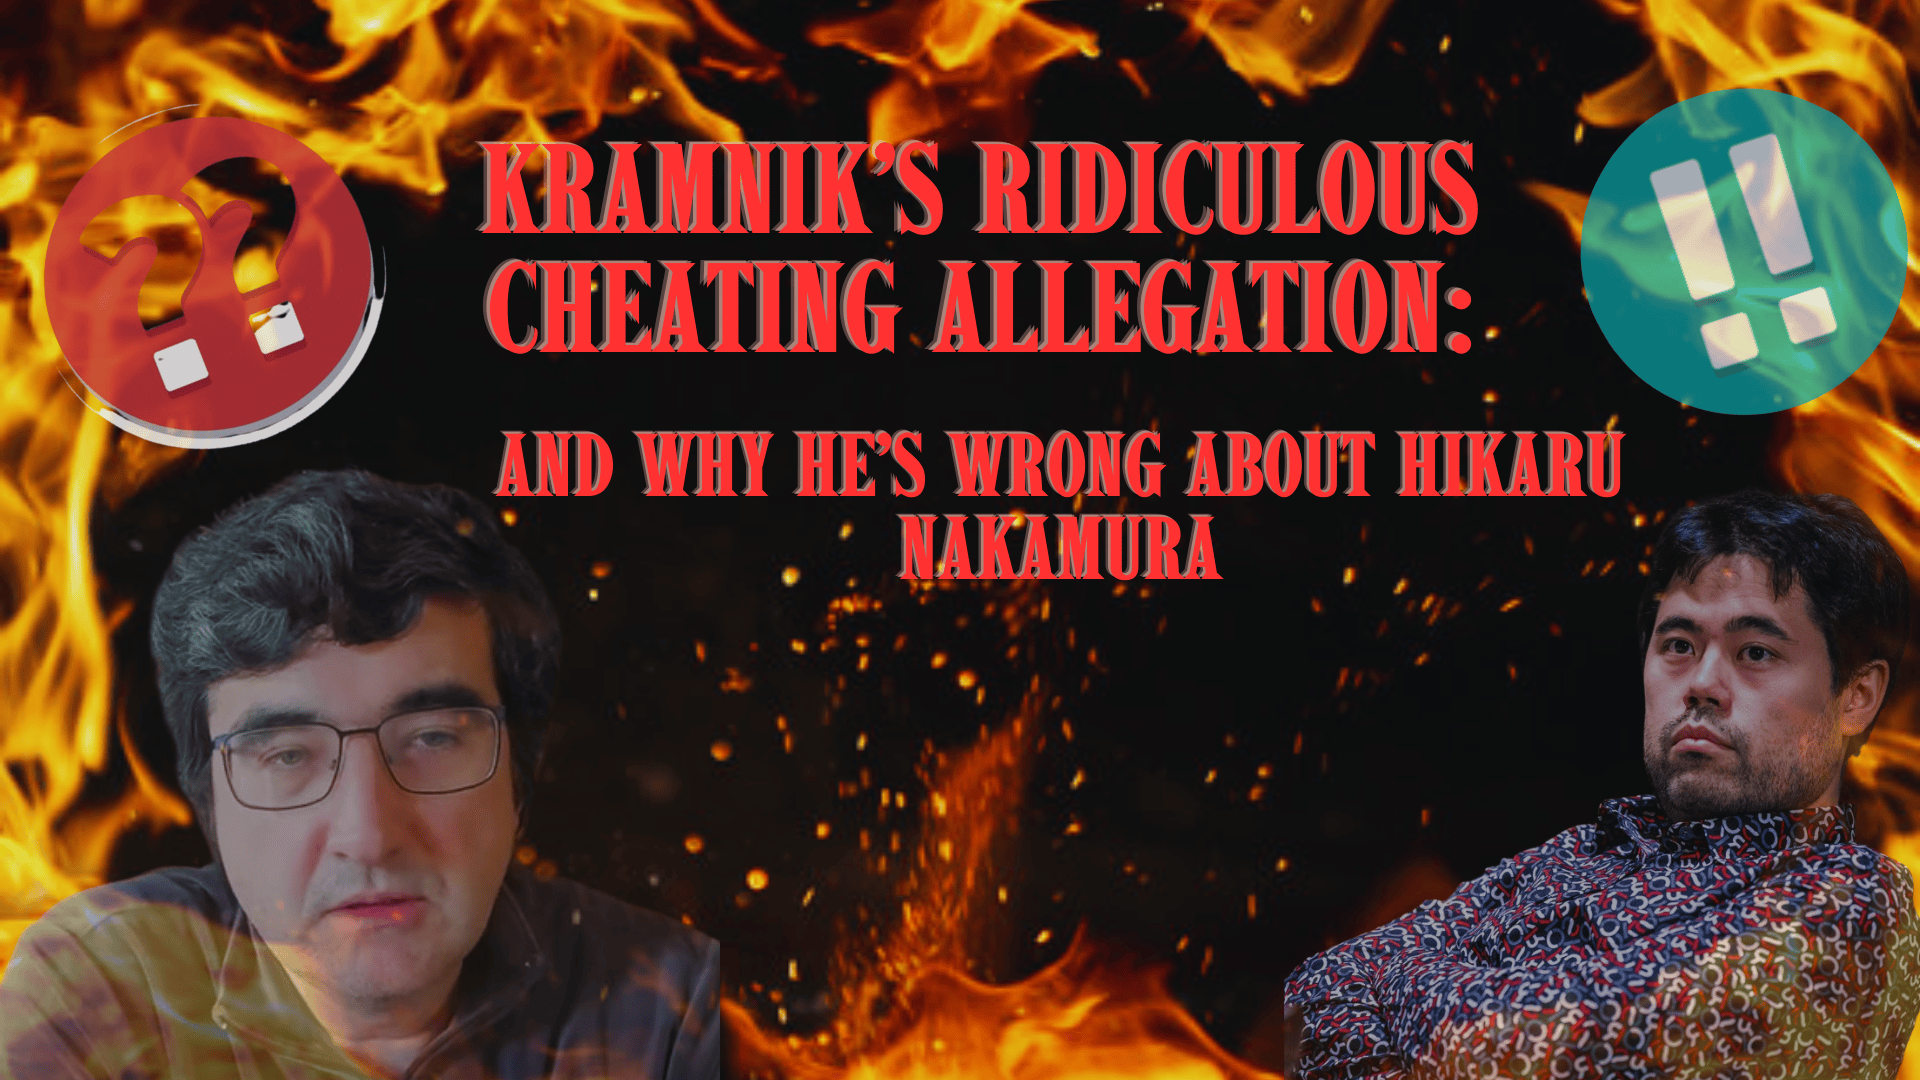 Chess grandmaster, Hikaru Nakamura responds to 'garbage' cheating  accusations